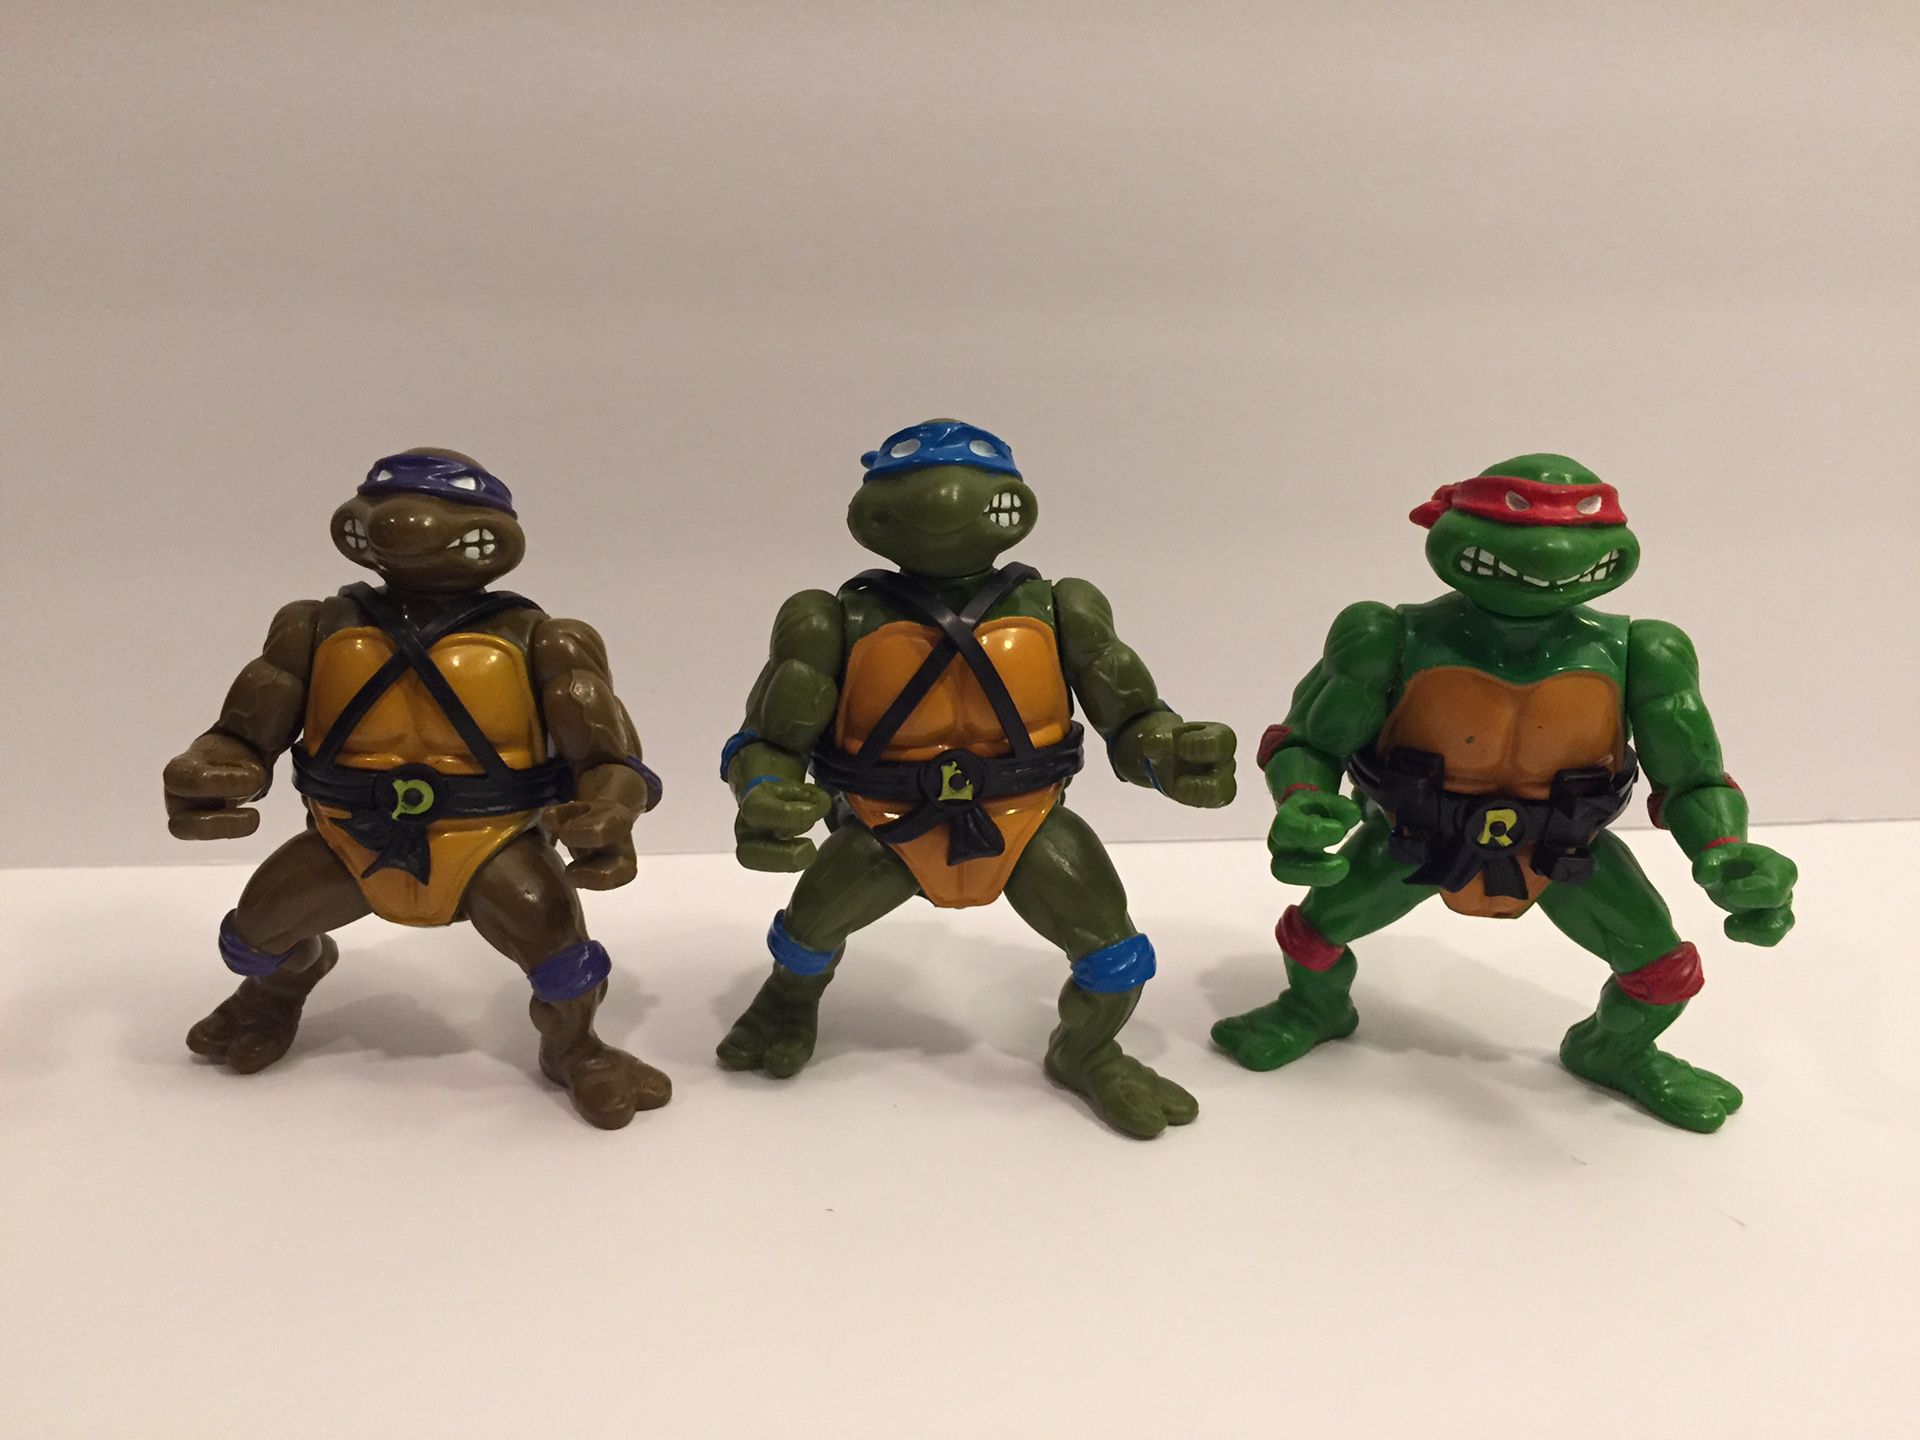 1988 TMNT 3 Turtle Lot - With Belts - Teenage Mutant Ninja - Vintage Action Figure Toy Playmates